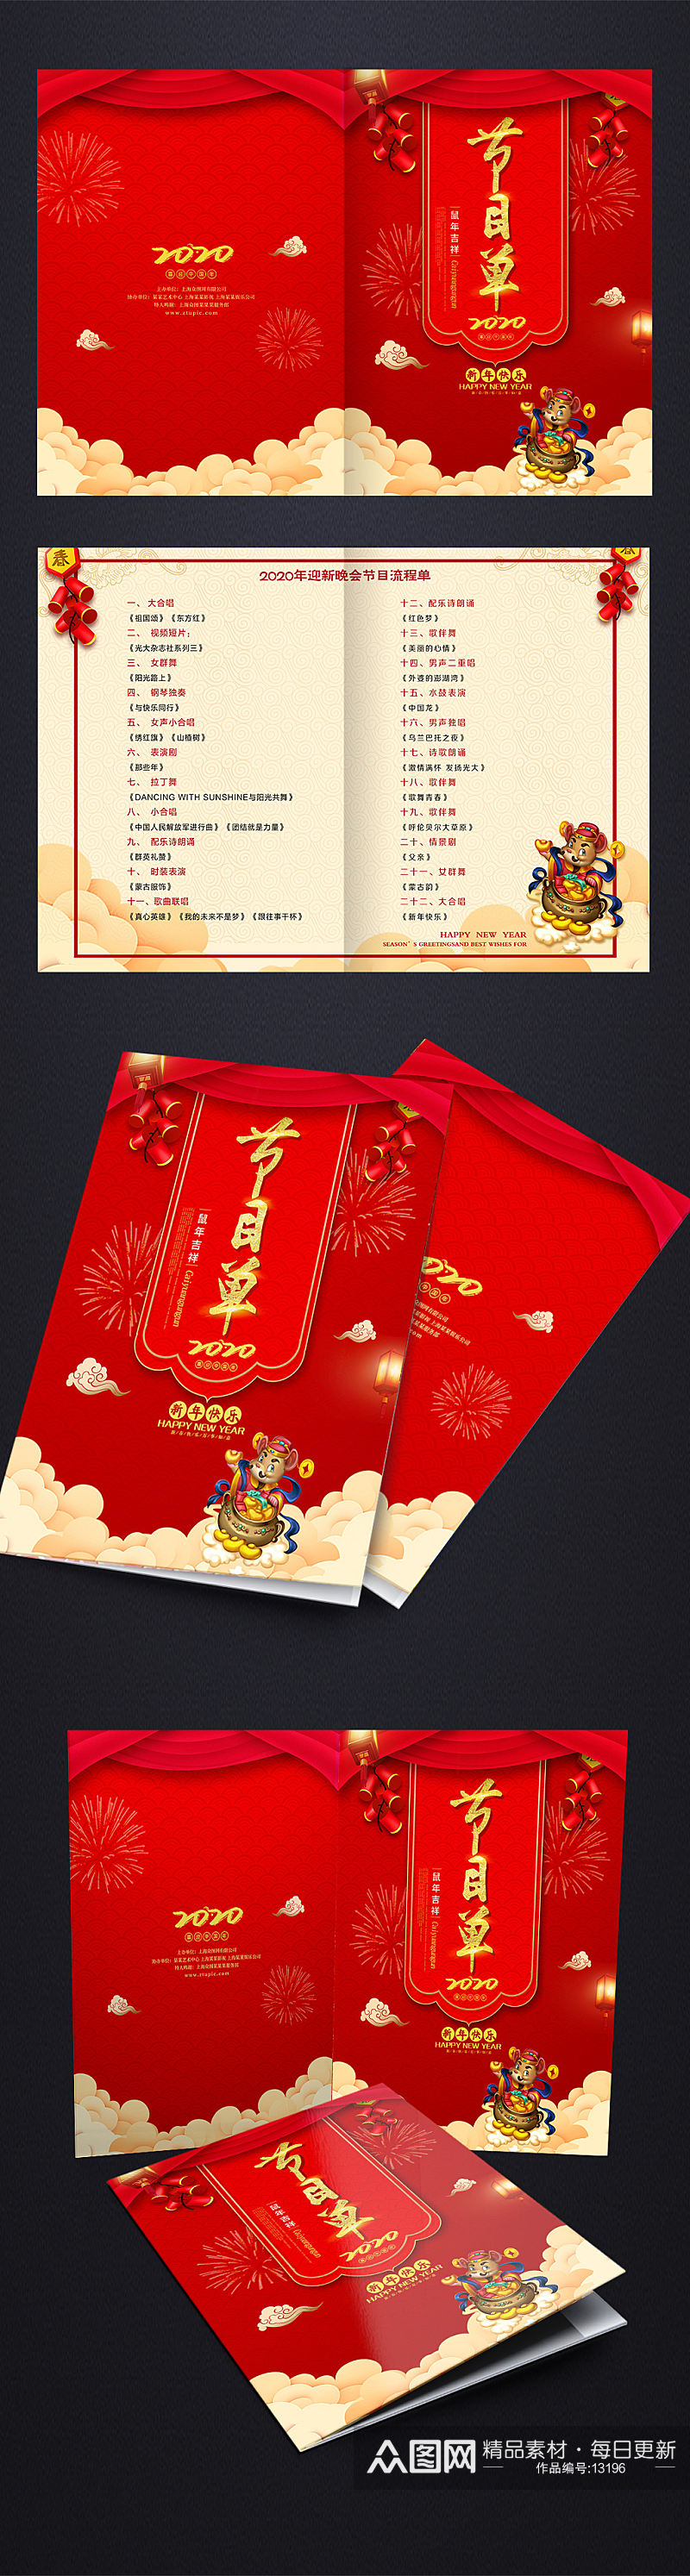 红色喜庆春节晚会节目单设计素材